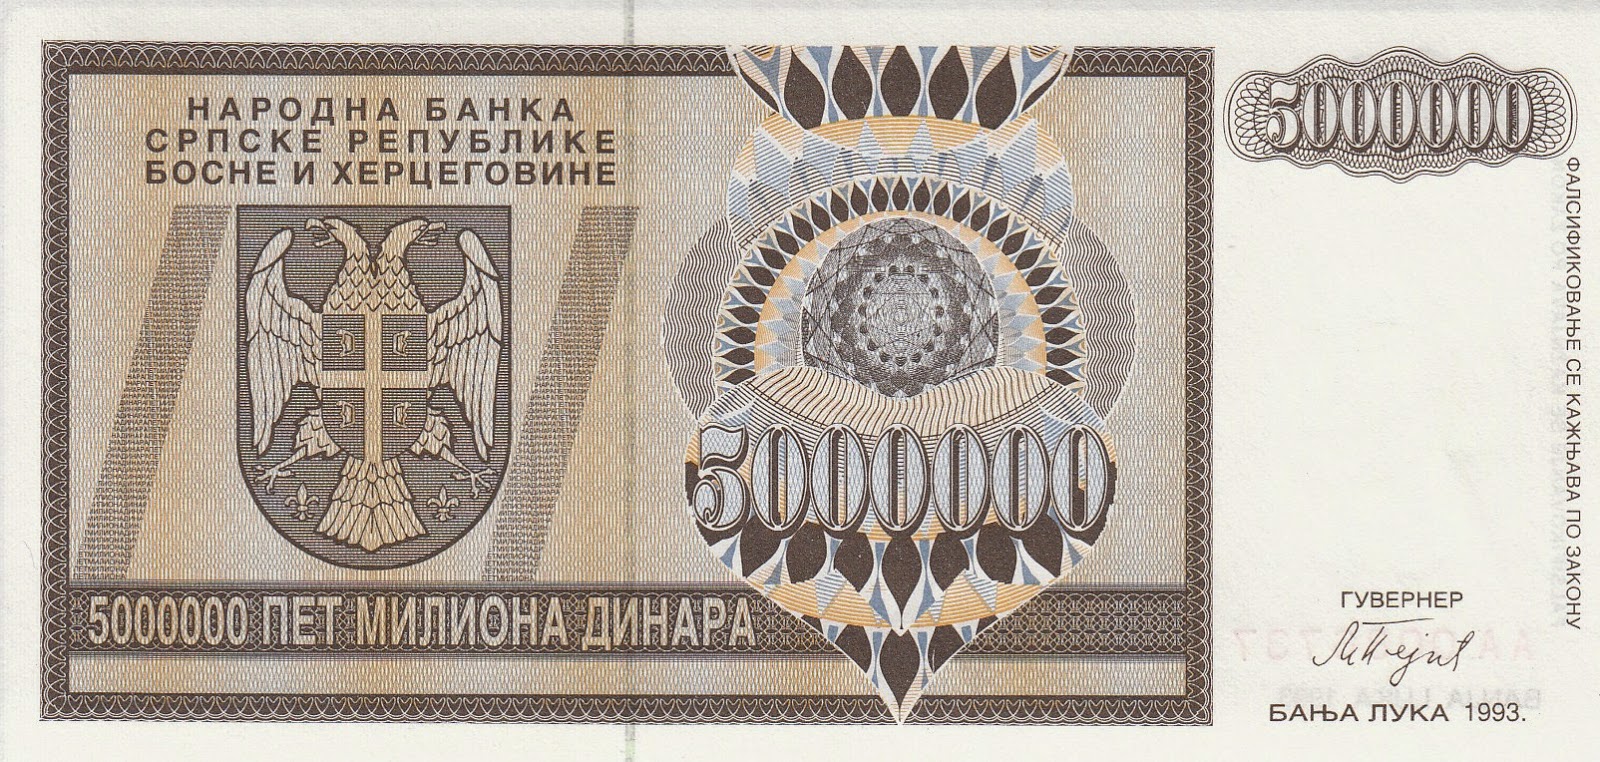 P-R31 100000 Croatia Dinara UNC > Bosnian War Knin 10,000 1994 